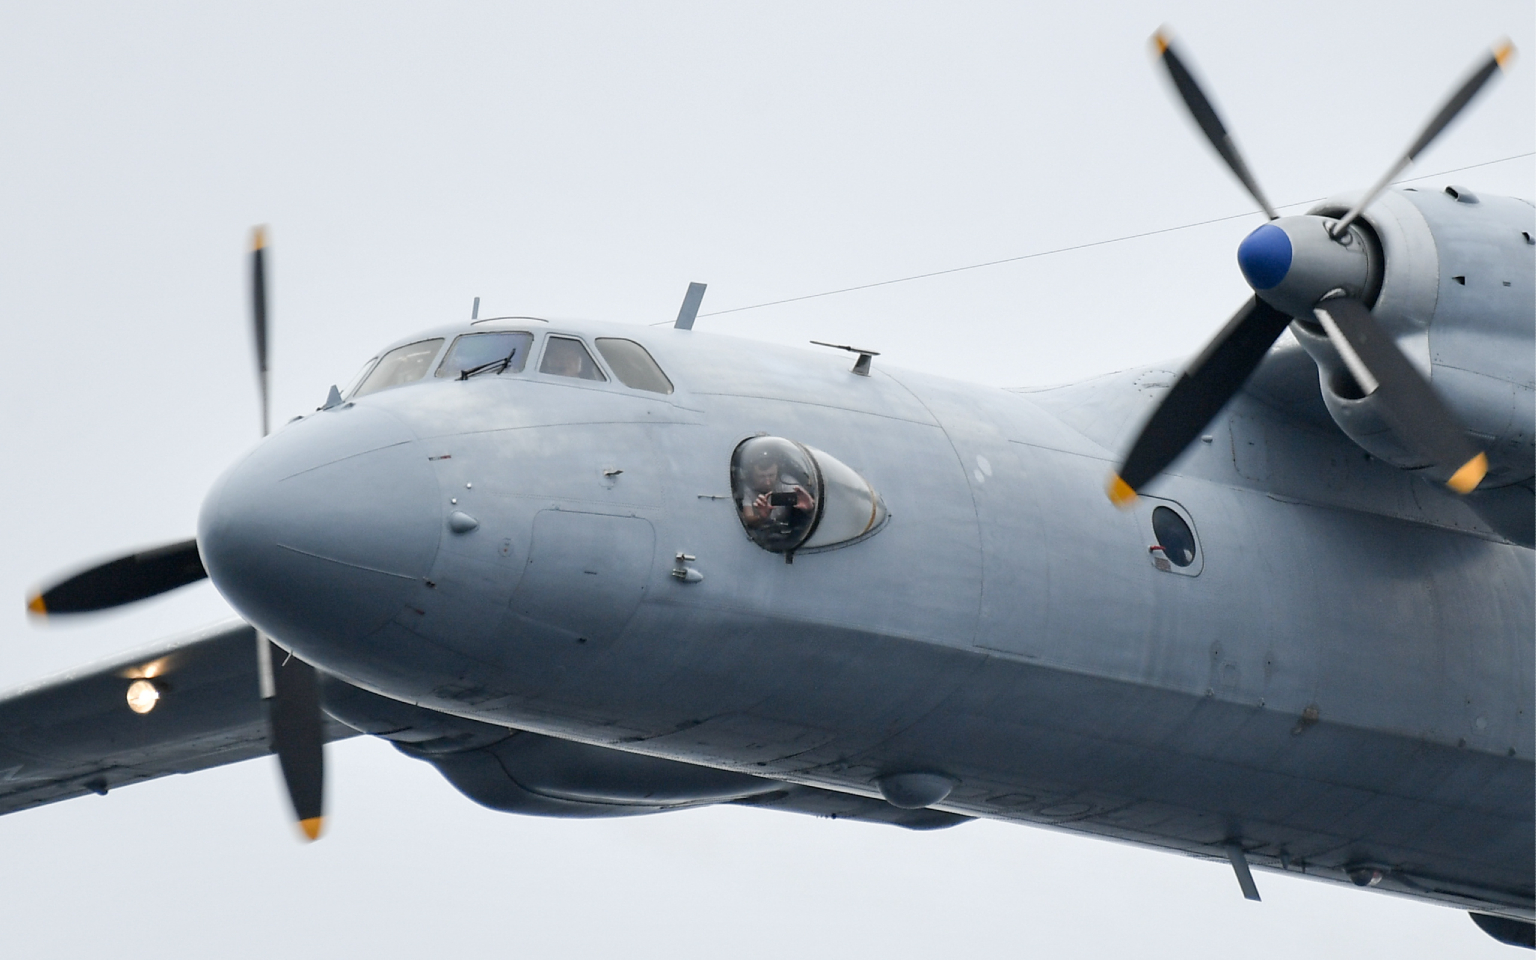 Спасатели нашли обломки пропавшего в Хабаровском крае самолета Ан-26